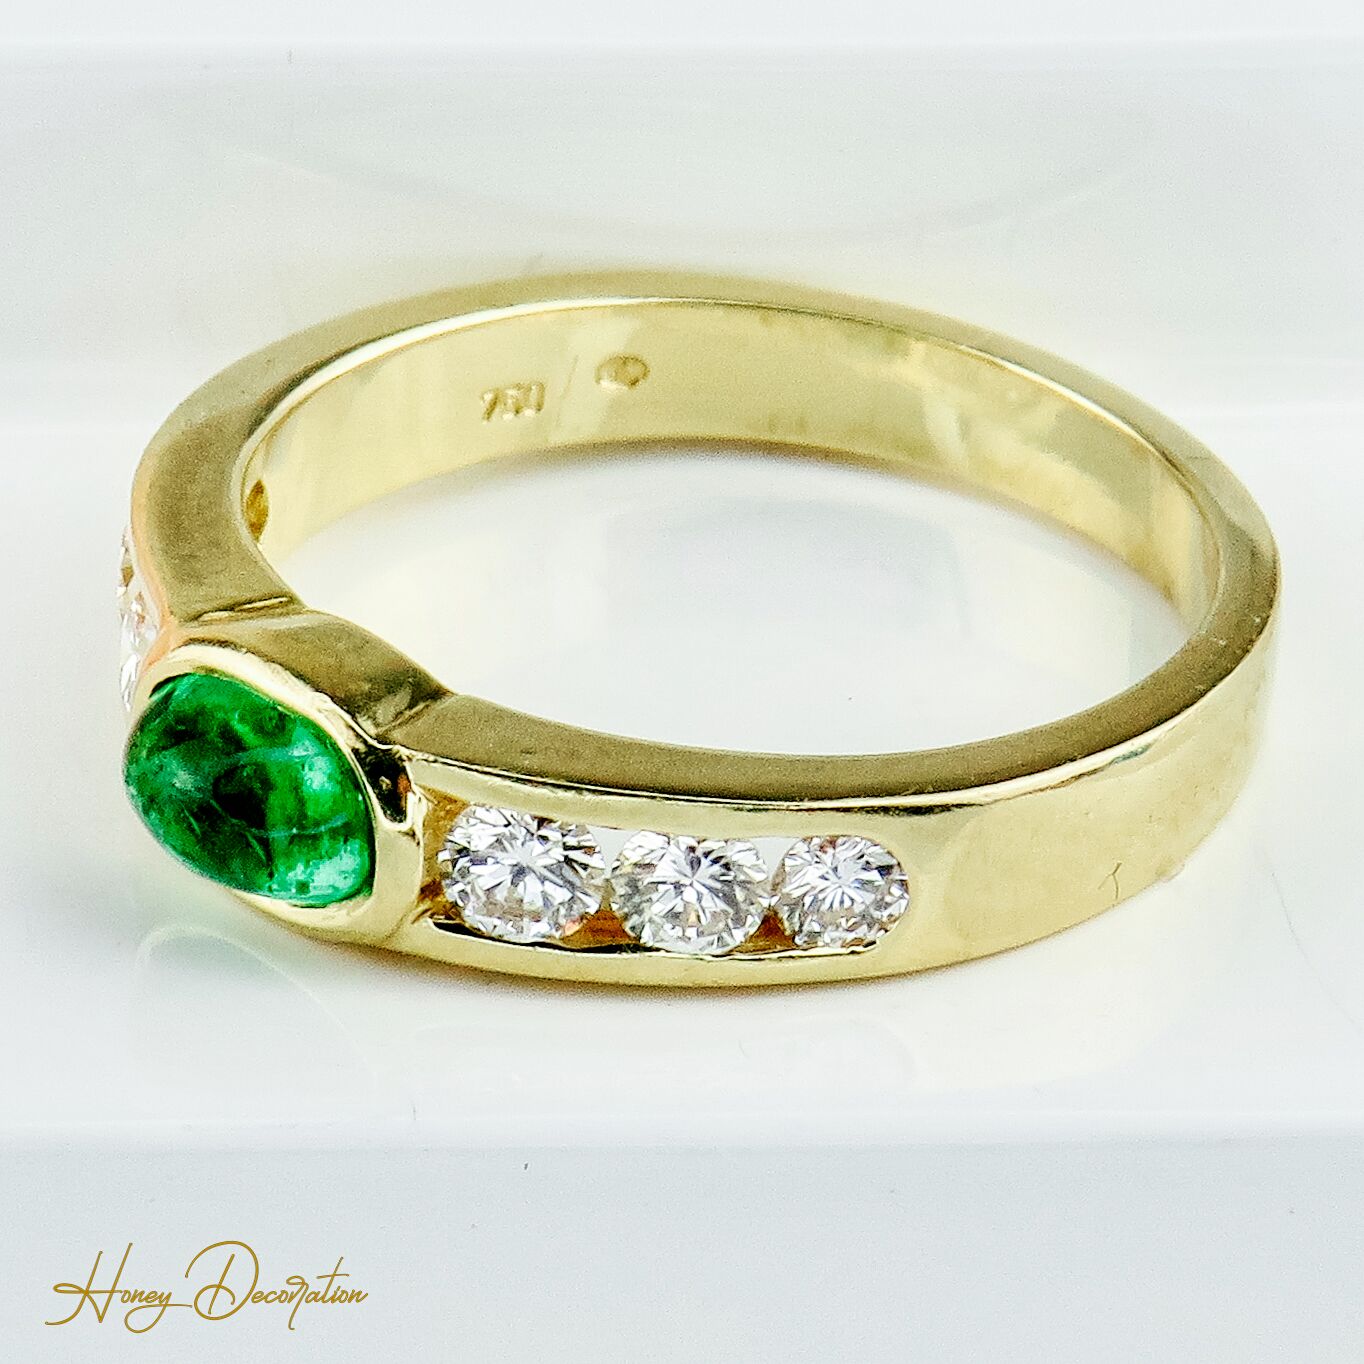 Toller Halo-Ring aus 18 Karat Gold mit Brillanten & Smaragd - Honey Decoration